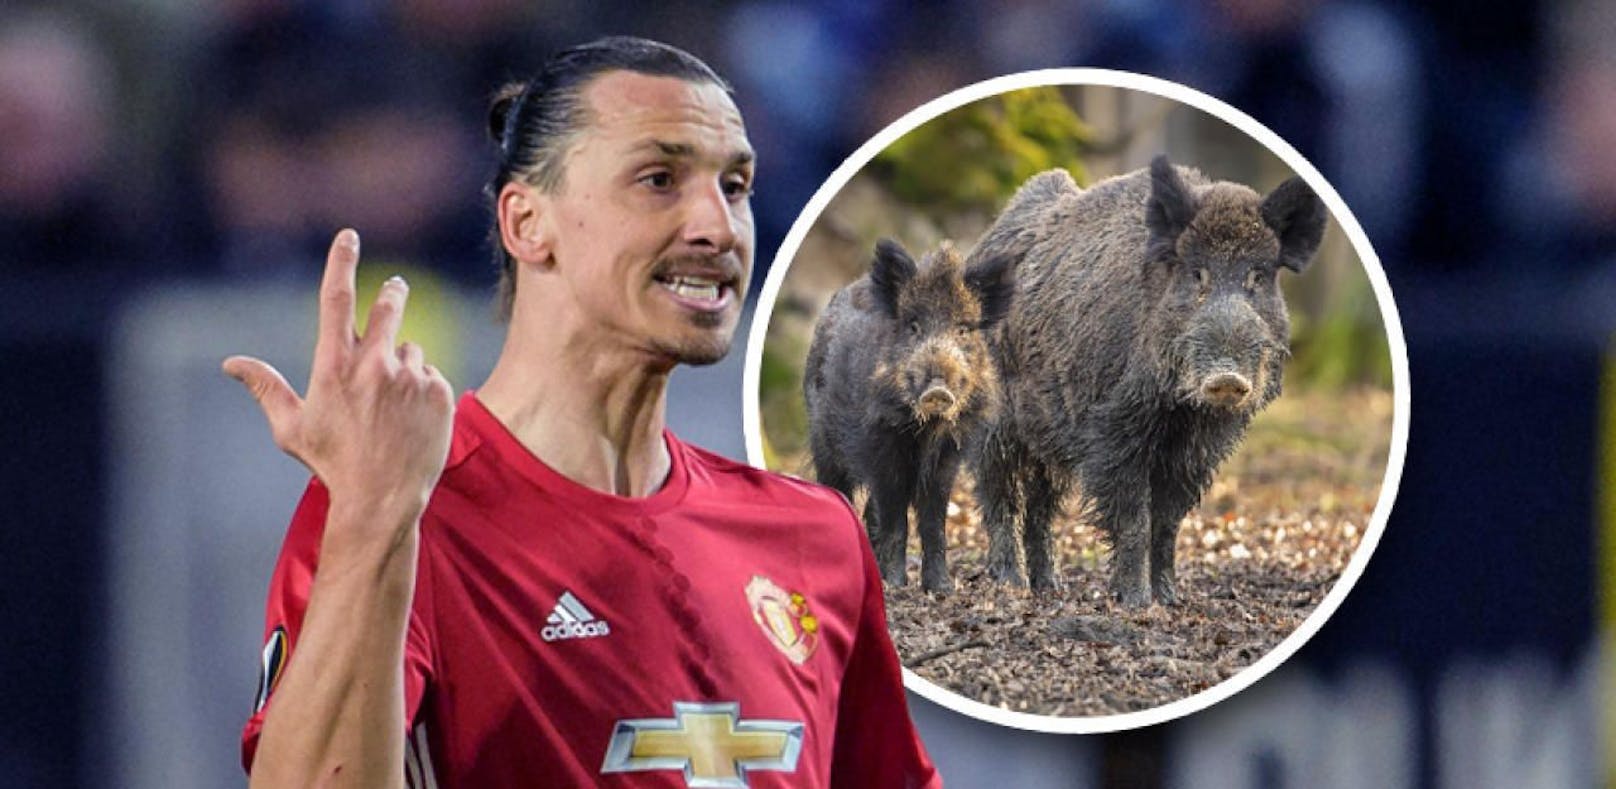 Ibrahimovic ist jetzt Wildschwein-Jäger